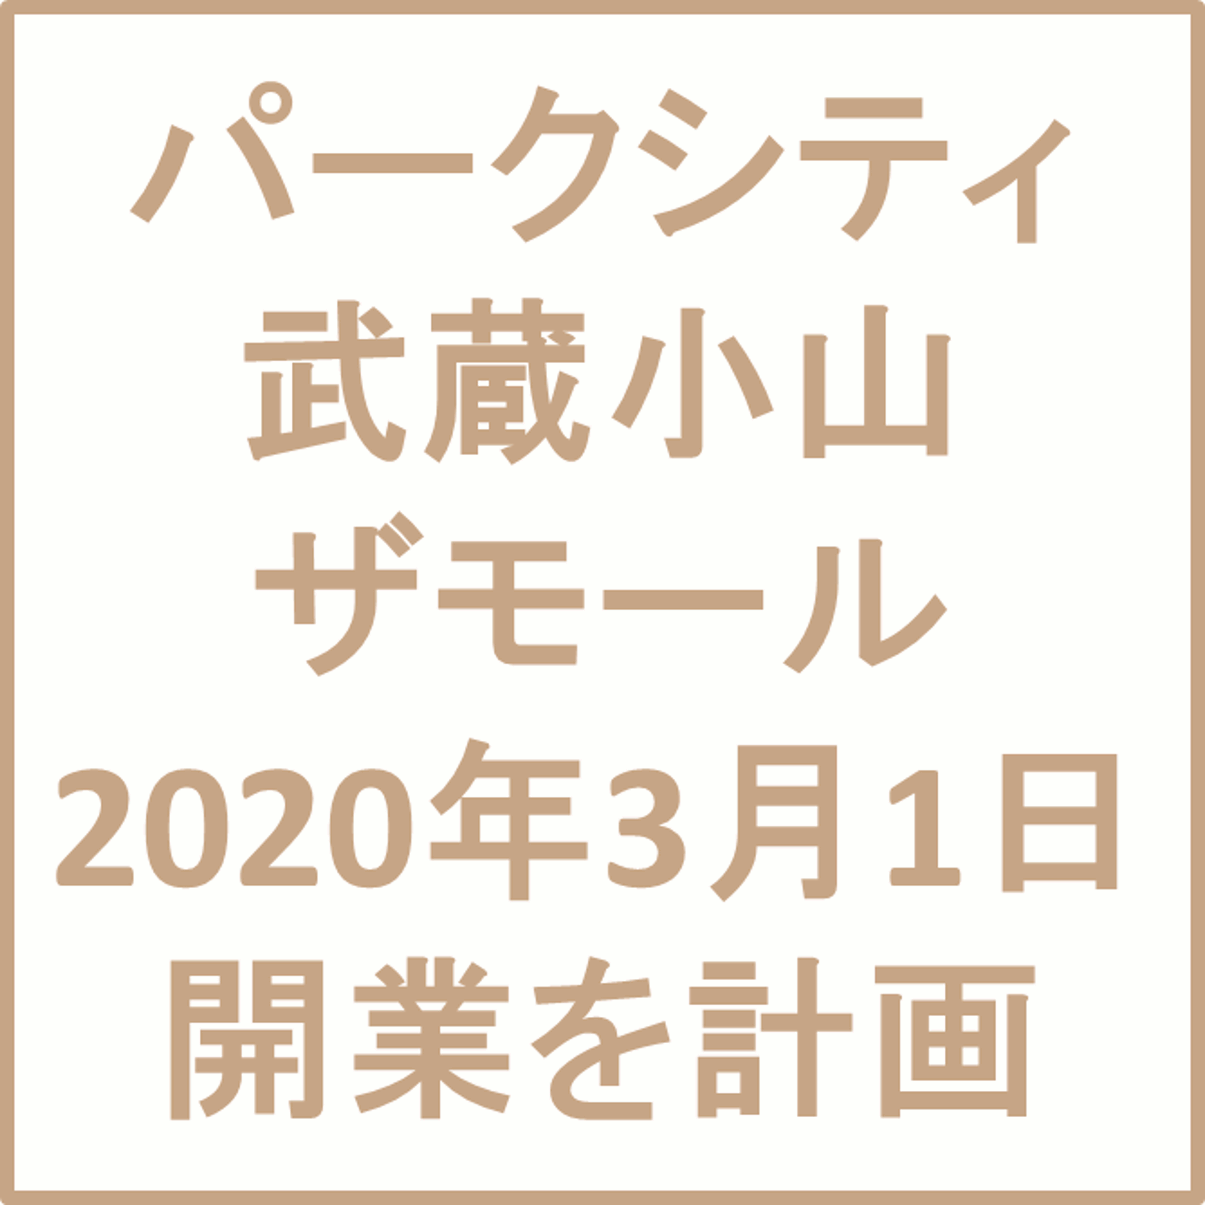 パークシティ武蔵小山ザモール20200301開業計画アイキャッチ1205